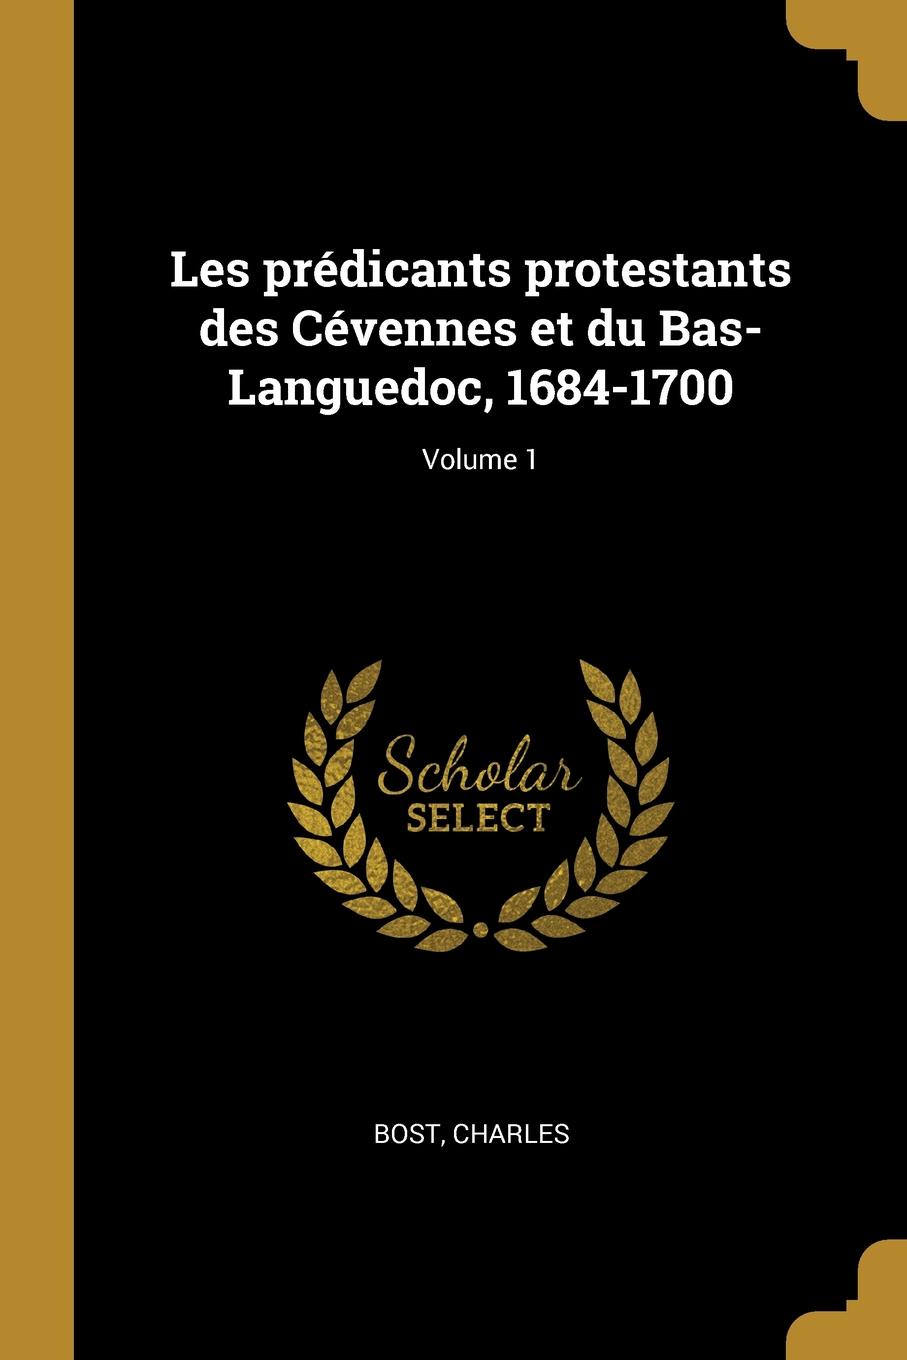 Les predicants protestants des Cevennes et du Bas-Languedoc, 1684-1700; Volume 1